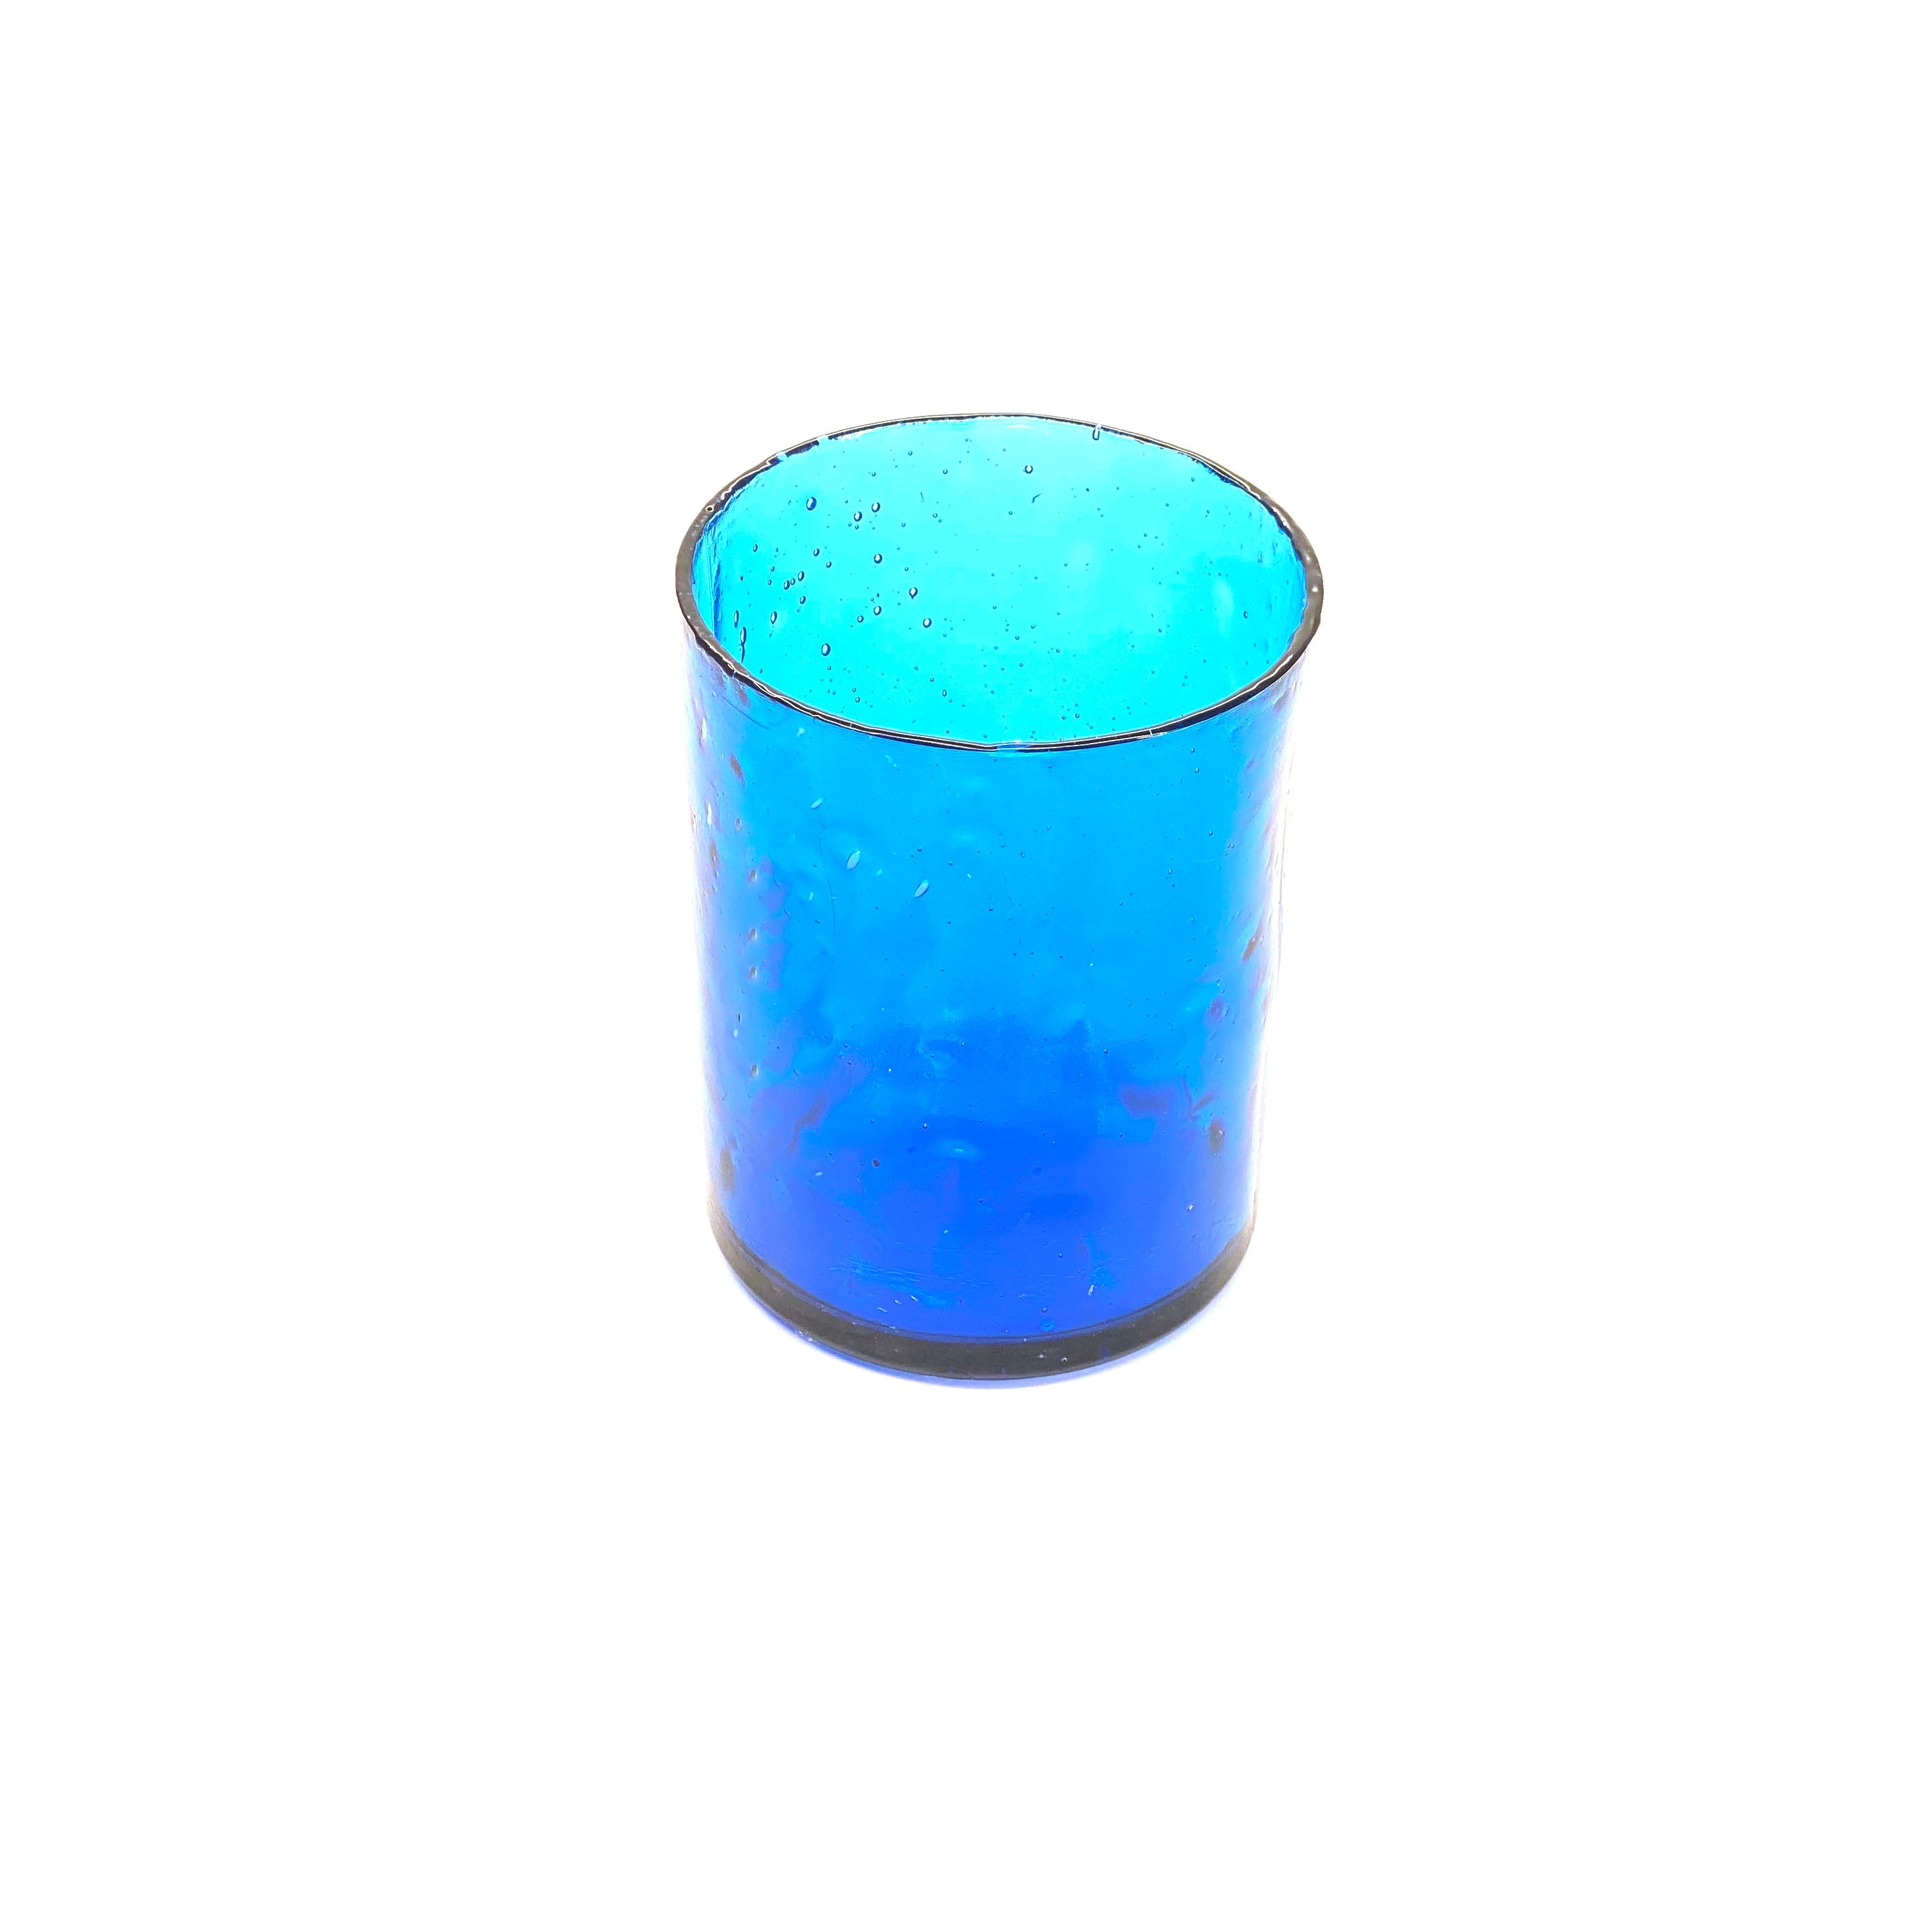 SMASHProps Breakaway Tumbler Glass - LIGHT BLUE translucent - Light Blue,Translucent